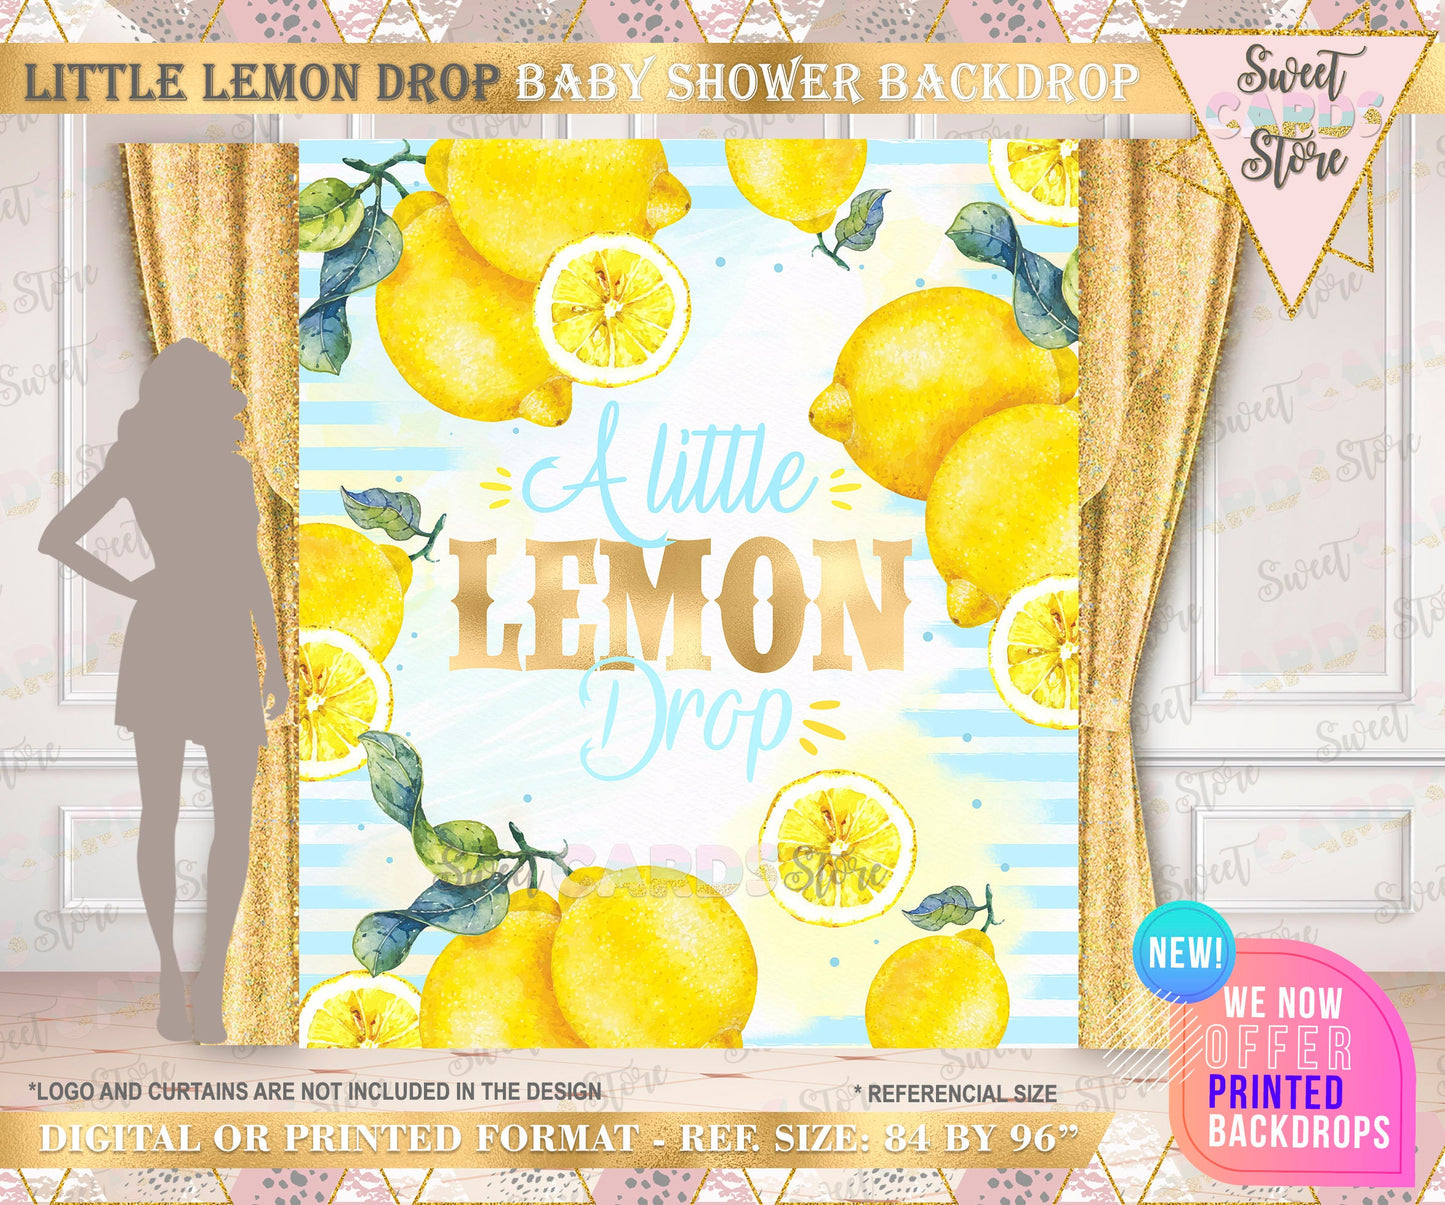 Lemonade baby shower Backdrop, little Lemon drop baby shower backdrop, Baby boy shower backdrop, lemon stripes baby shower Backdrop